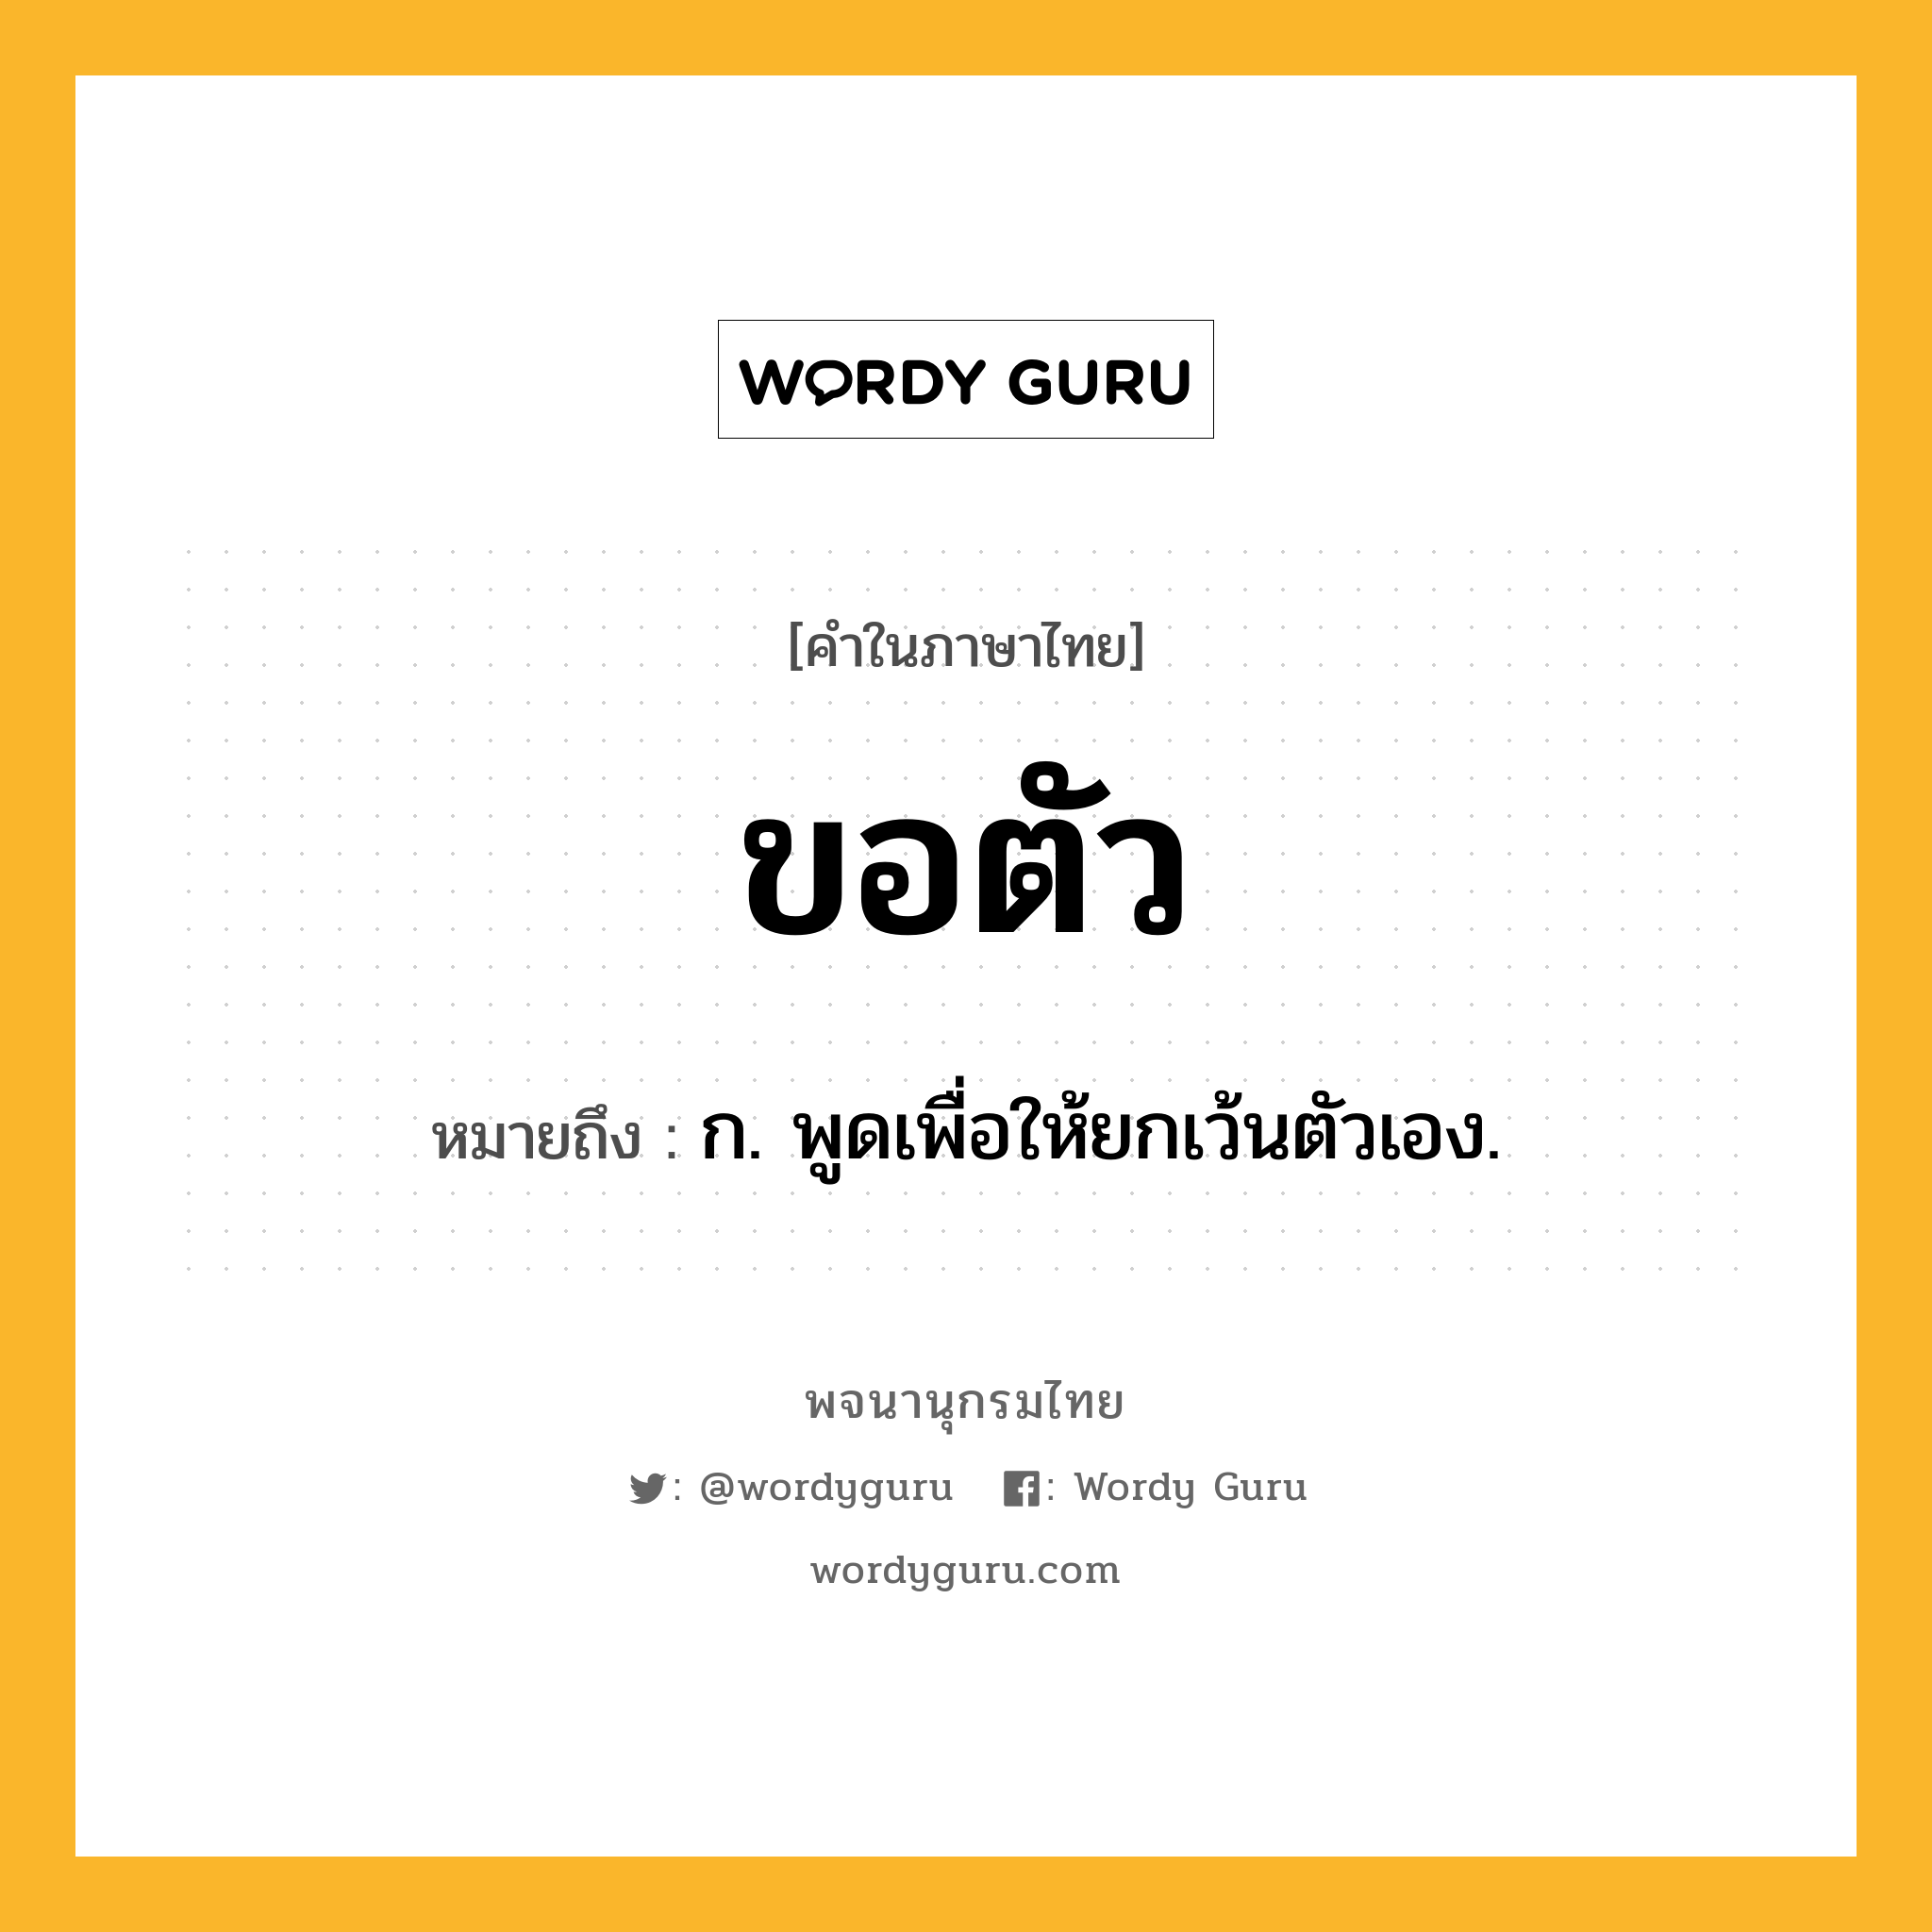 ขอตัว หมายถึงอะไร?, คำในภาษาไทย ขอตัว หมายถึง ก. พูดเพื่อให้ยกเว้นตัวเอง.